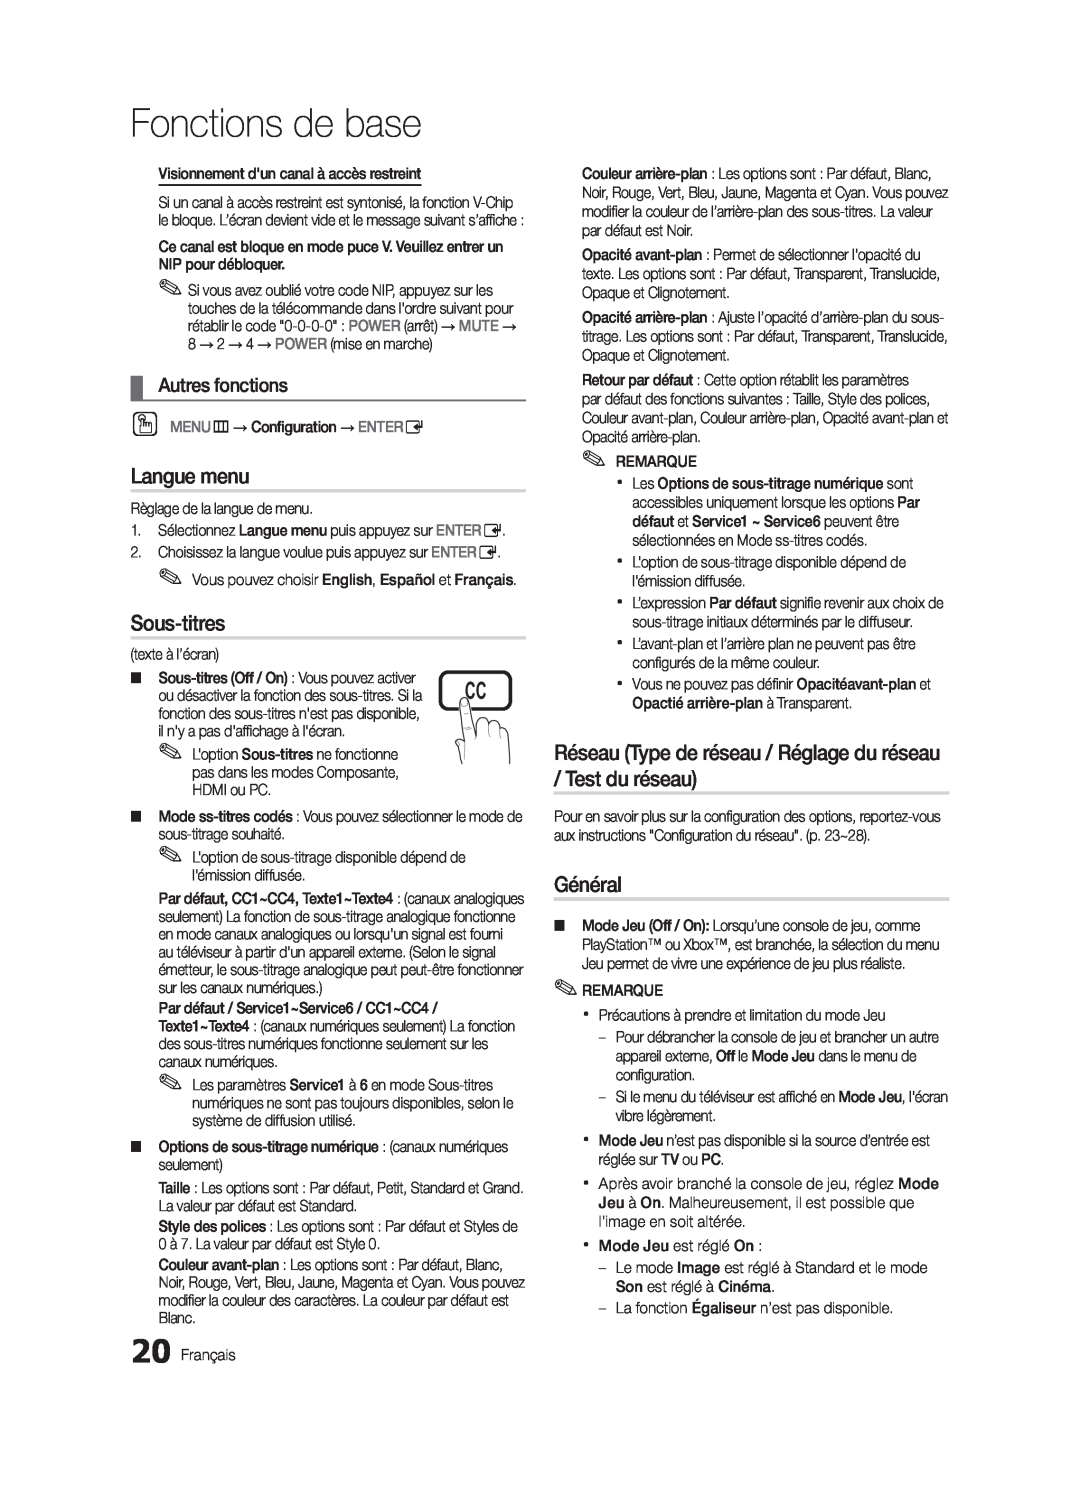 Samsung LN32C550 user manual Langue menu, Sous-titres, Réseau Type de réseau / Réglage du réseau / Test du réseau, Général 